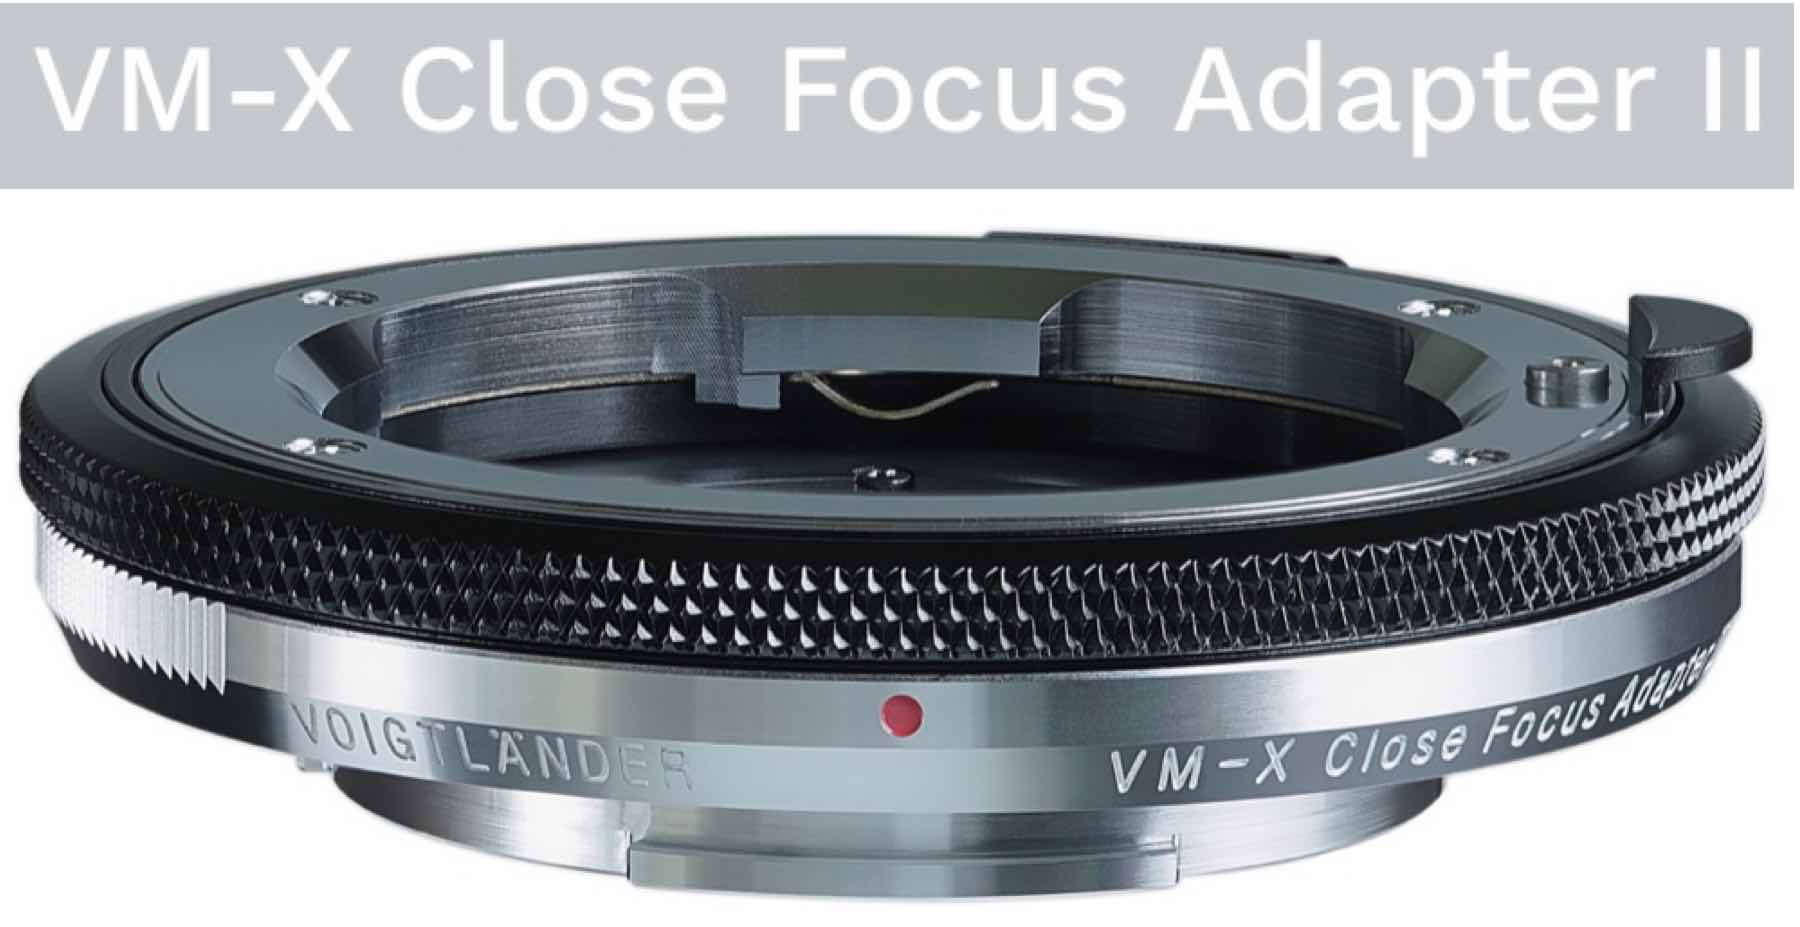 Voigtländer VM-X Close Focus Adapter II Coming Soon - Fuji